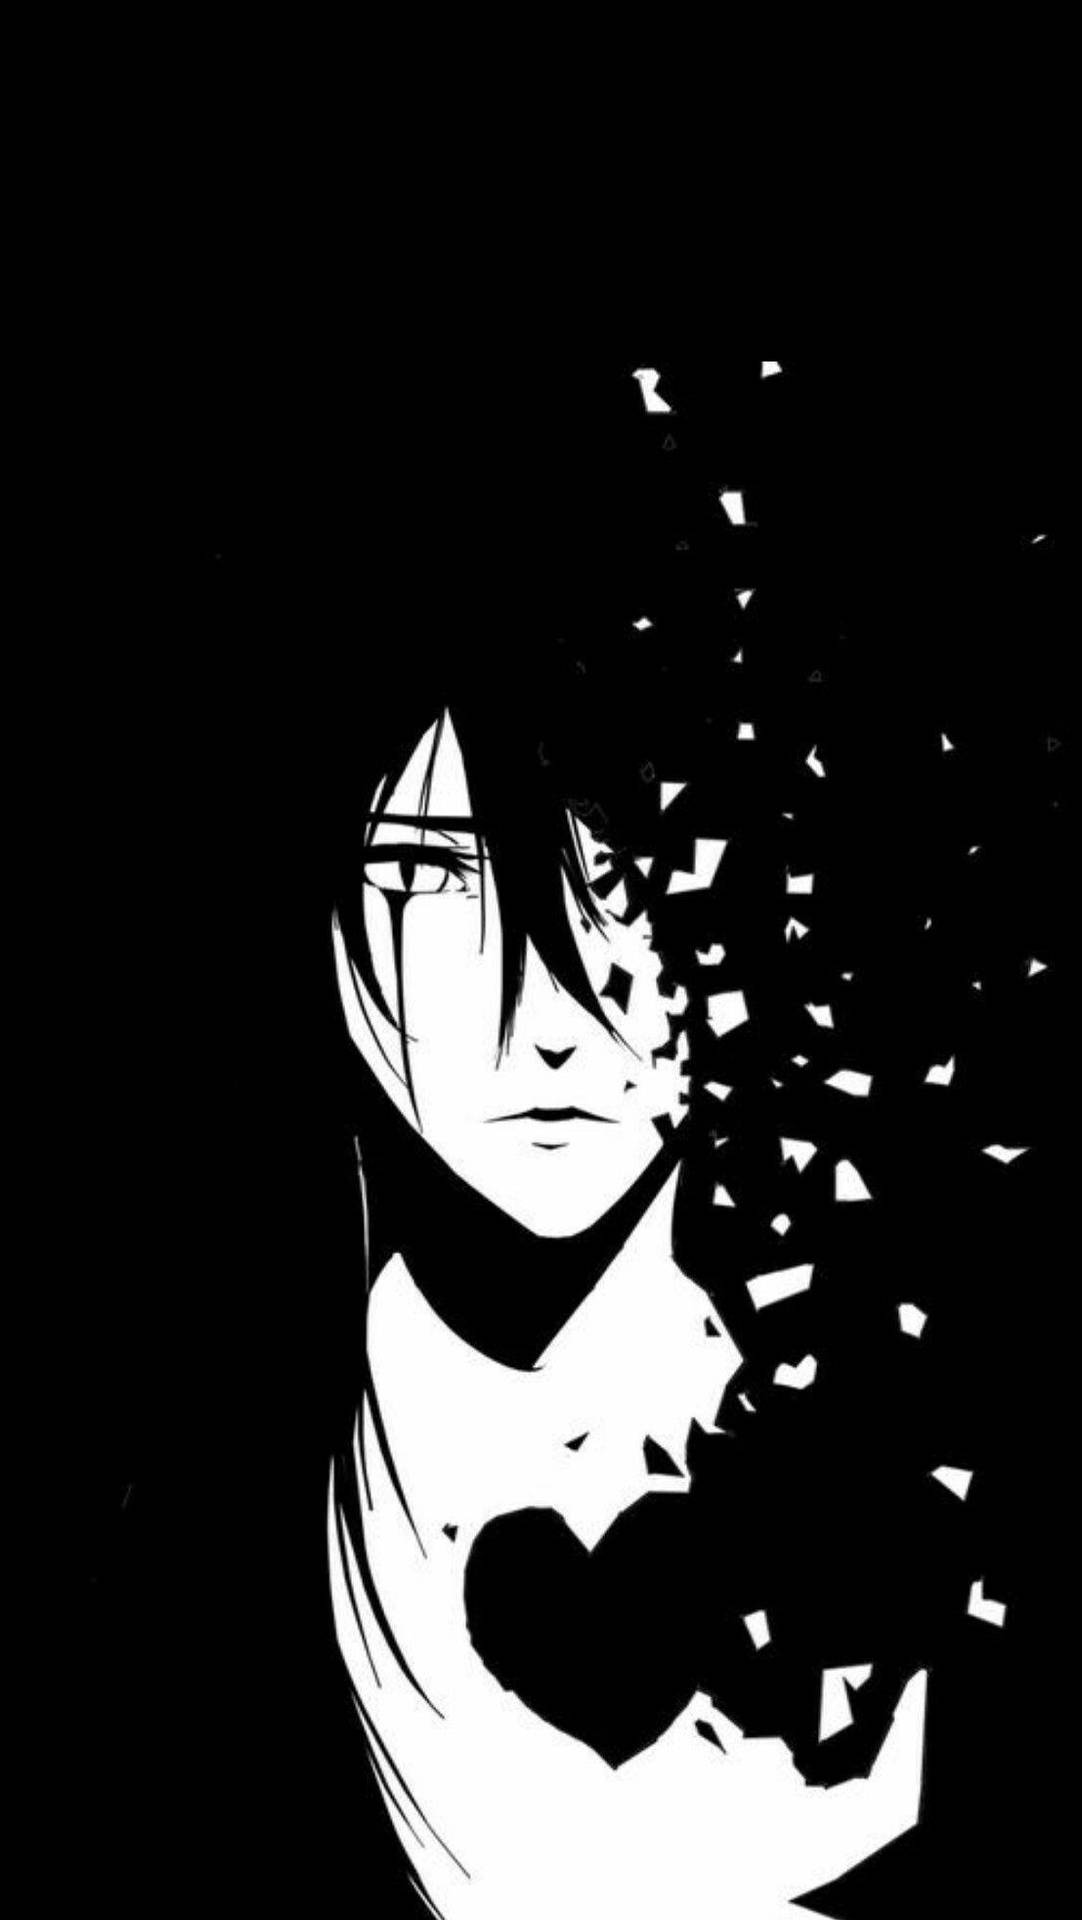 Heartbrudt dreng anime sort og hvid iPhone tapet. Wallpaper